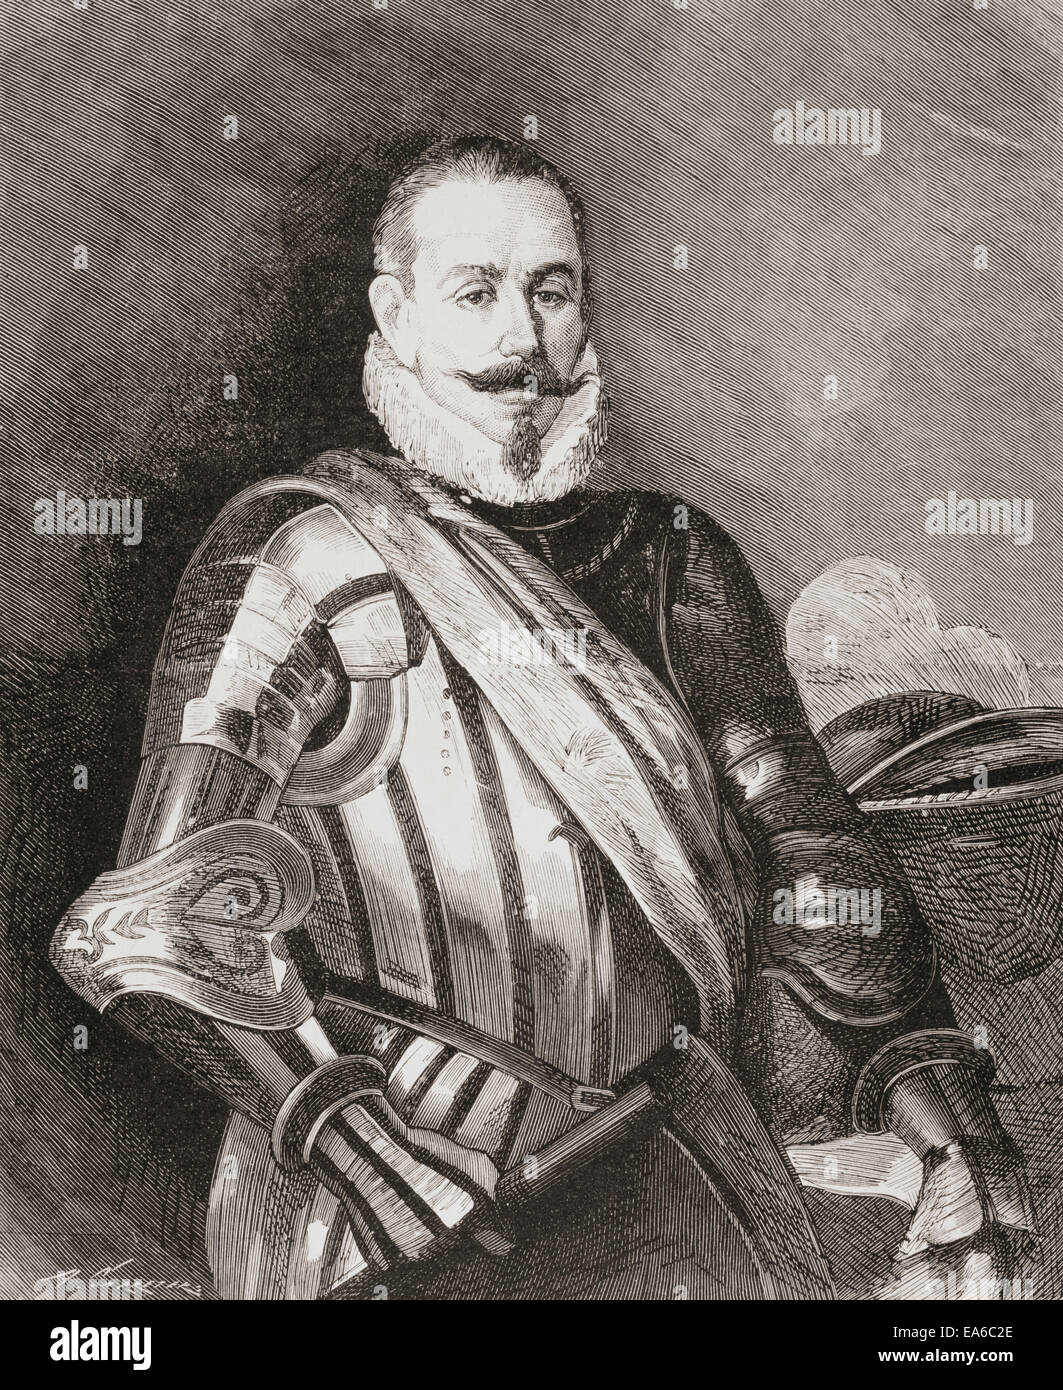 Pedro Gutiérrez de Valdivia oder Valdiva, 1500 – 1553.   Spanische Eroberer und der erste königliche Gouverneur von Chile. Stockfoto